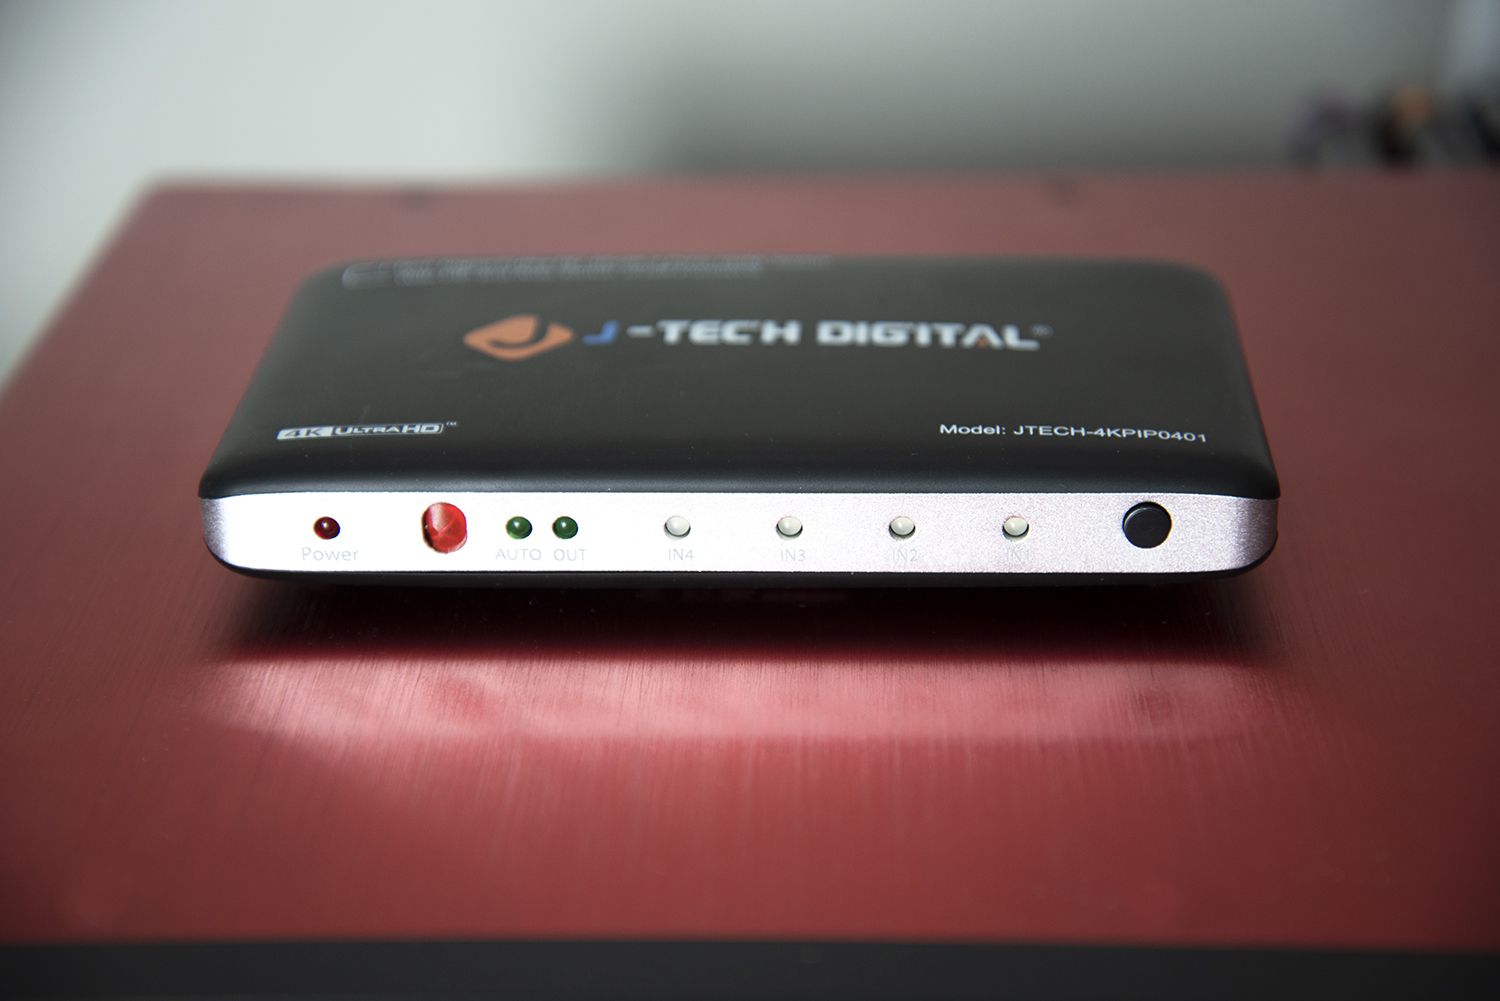 J-Tech Digital 4x1 HDMI-kytkin